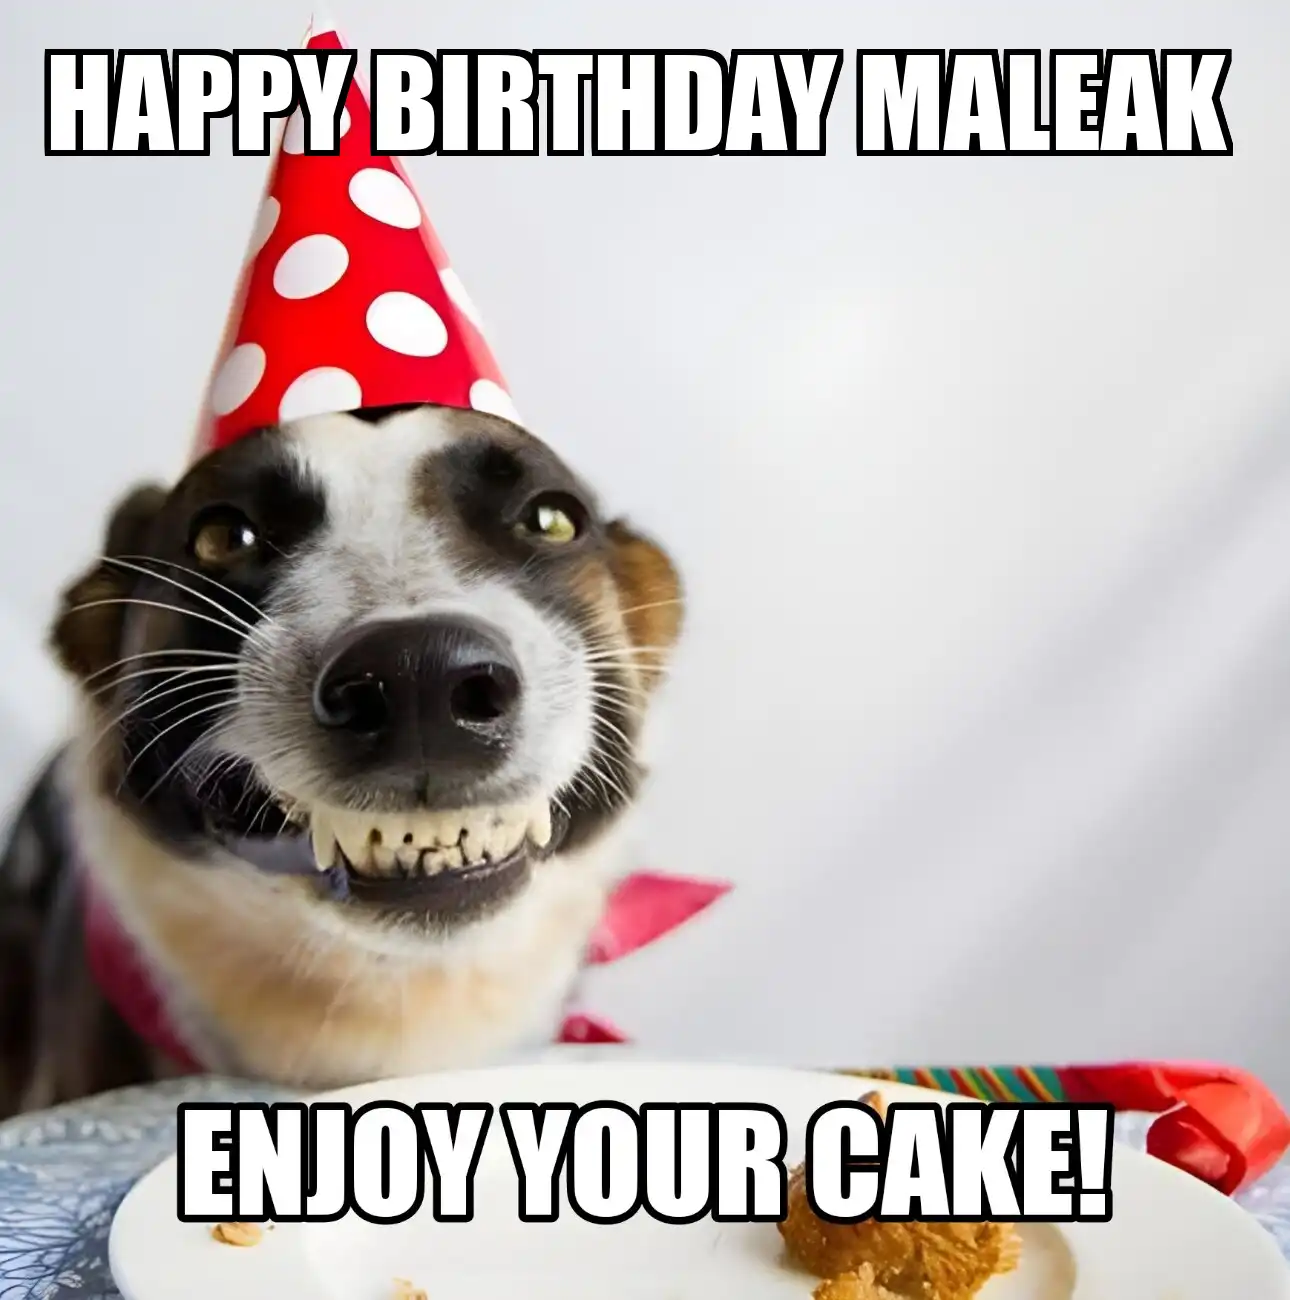 Happy Birthday Maleak Enjoy Your Cake Dog Meme